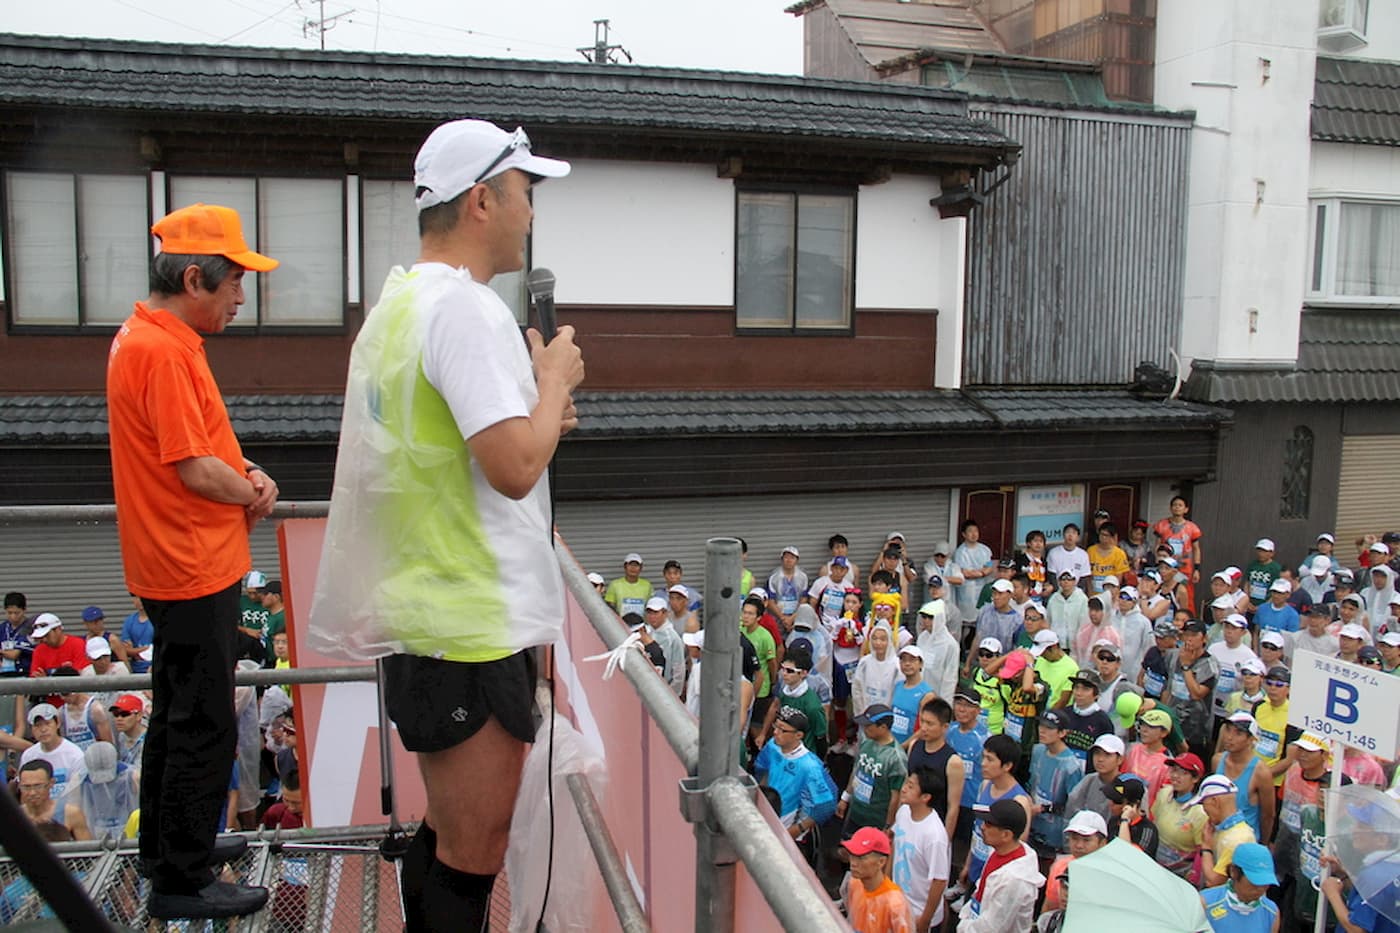 小布施見にマラソン 長野県 イベント情報が満載のポータルサイト Event Greenfield